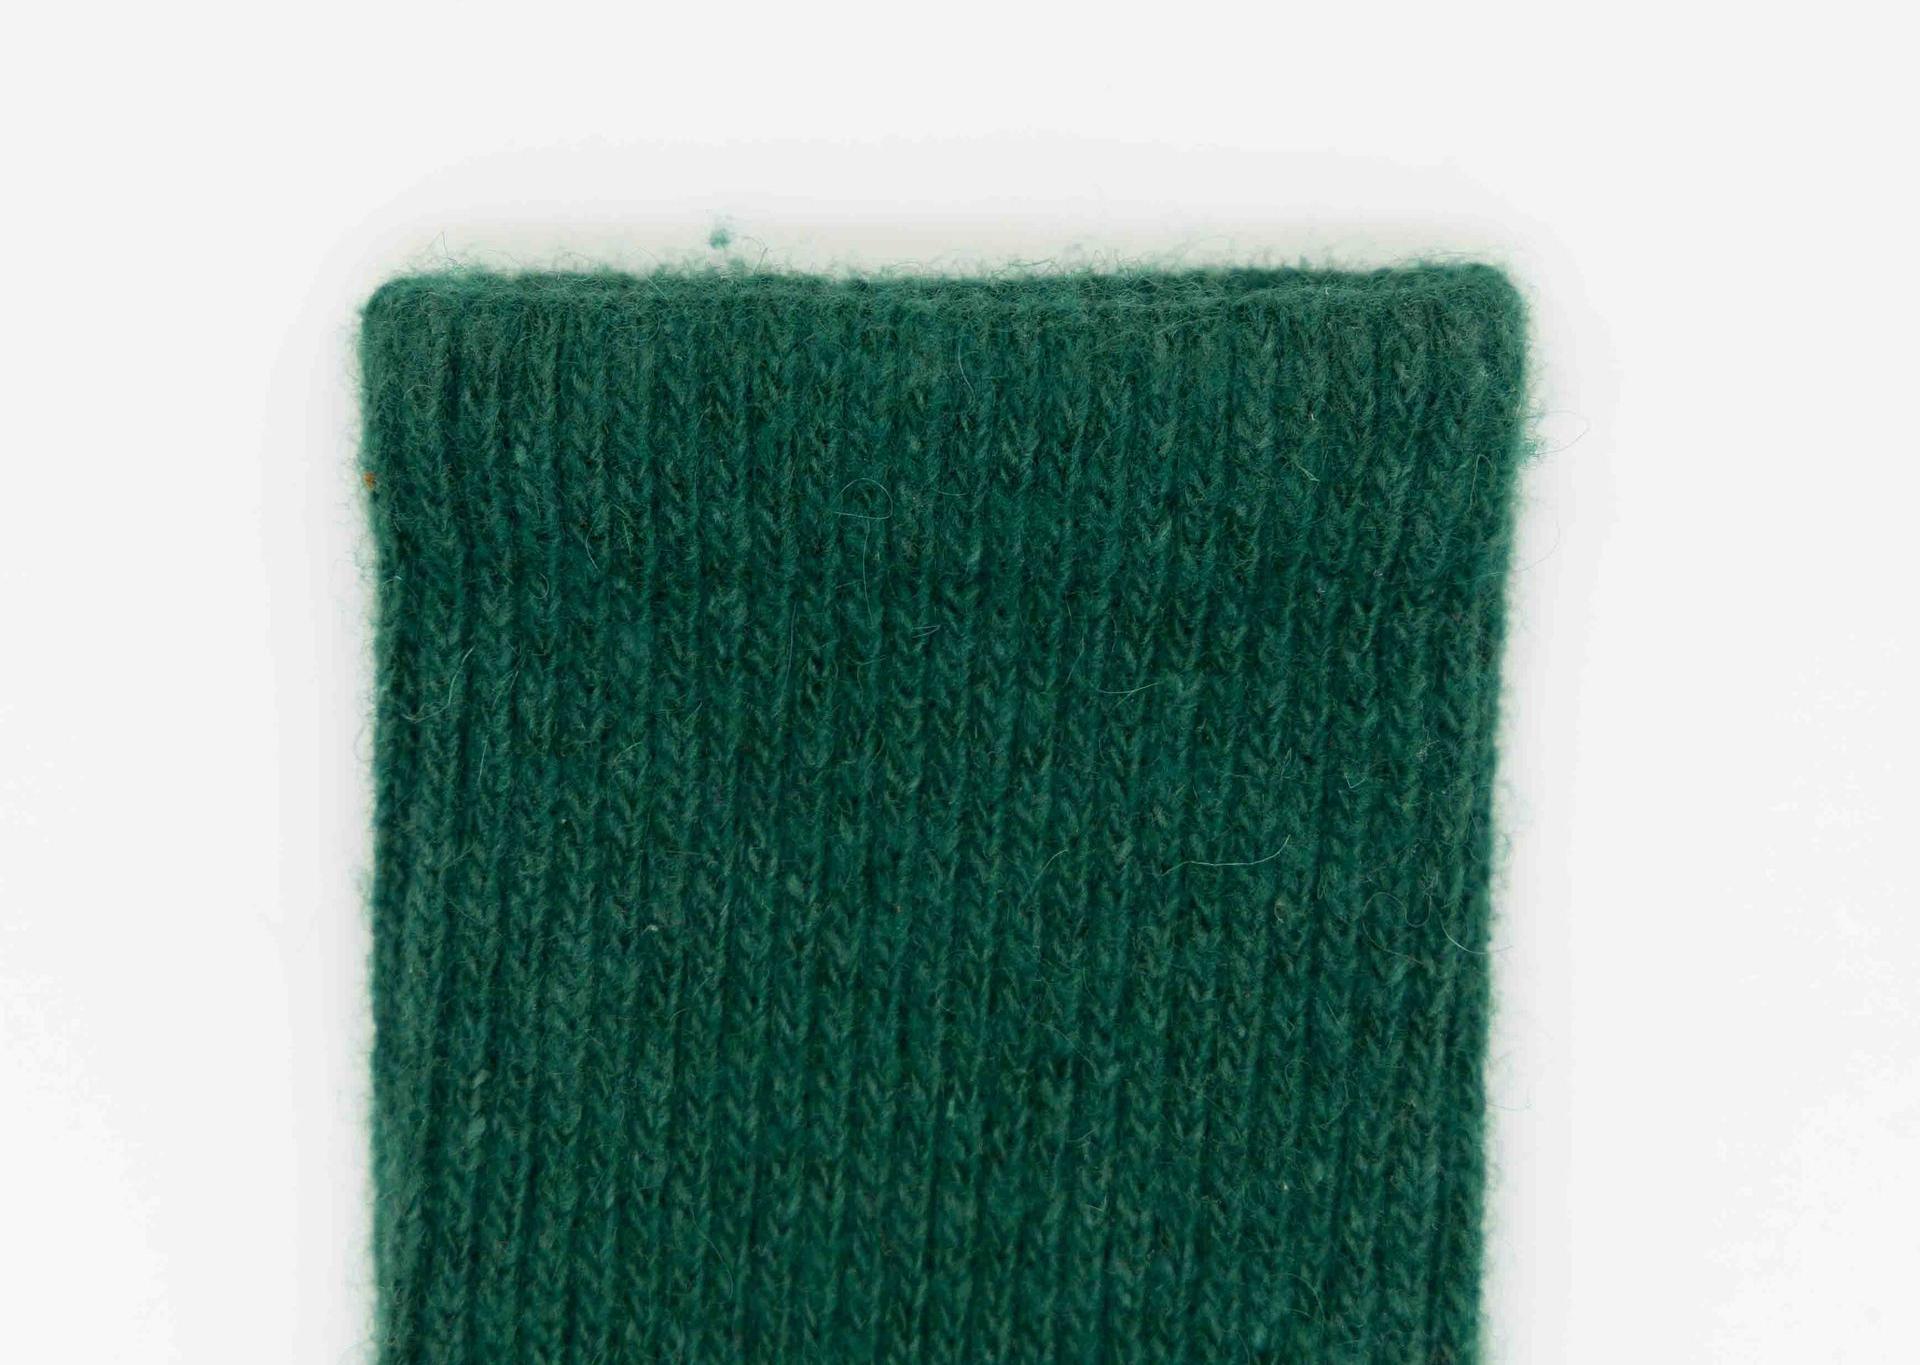 Detailbild des Bundes eines tannengrünen Socken aus Schafwolle.